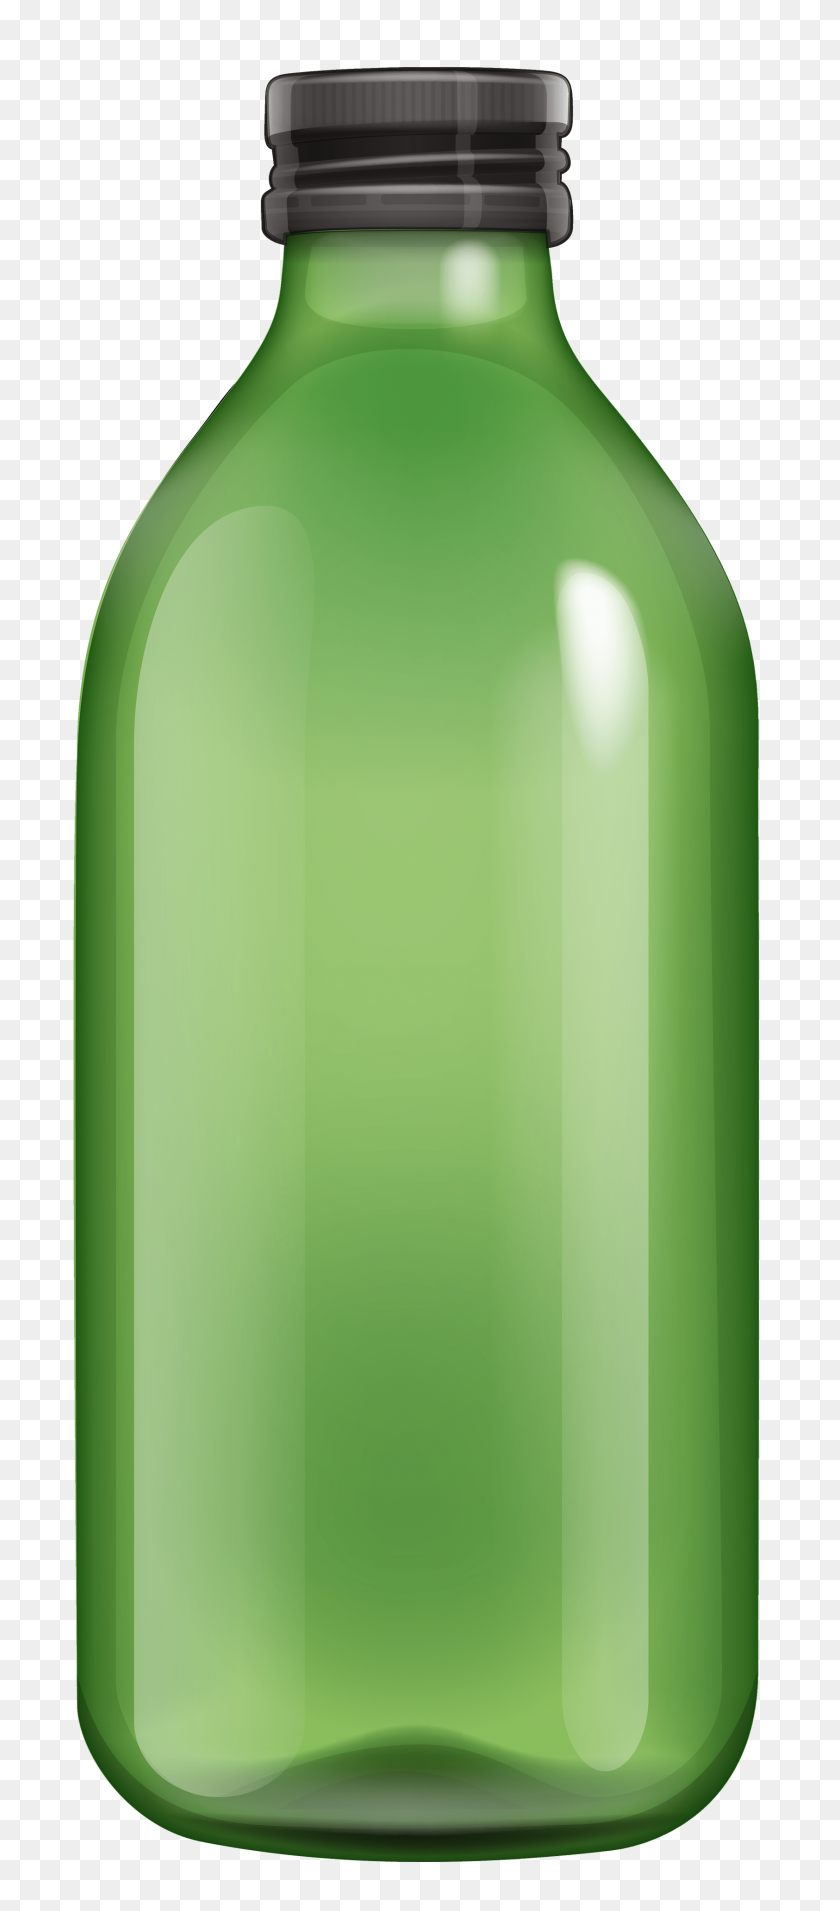 1685x4000 Significado De Los Signos En Botellas De Plástico - Botella De Plástico Png